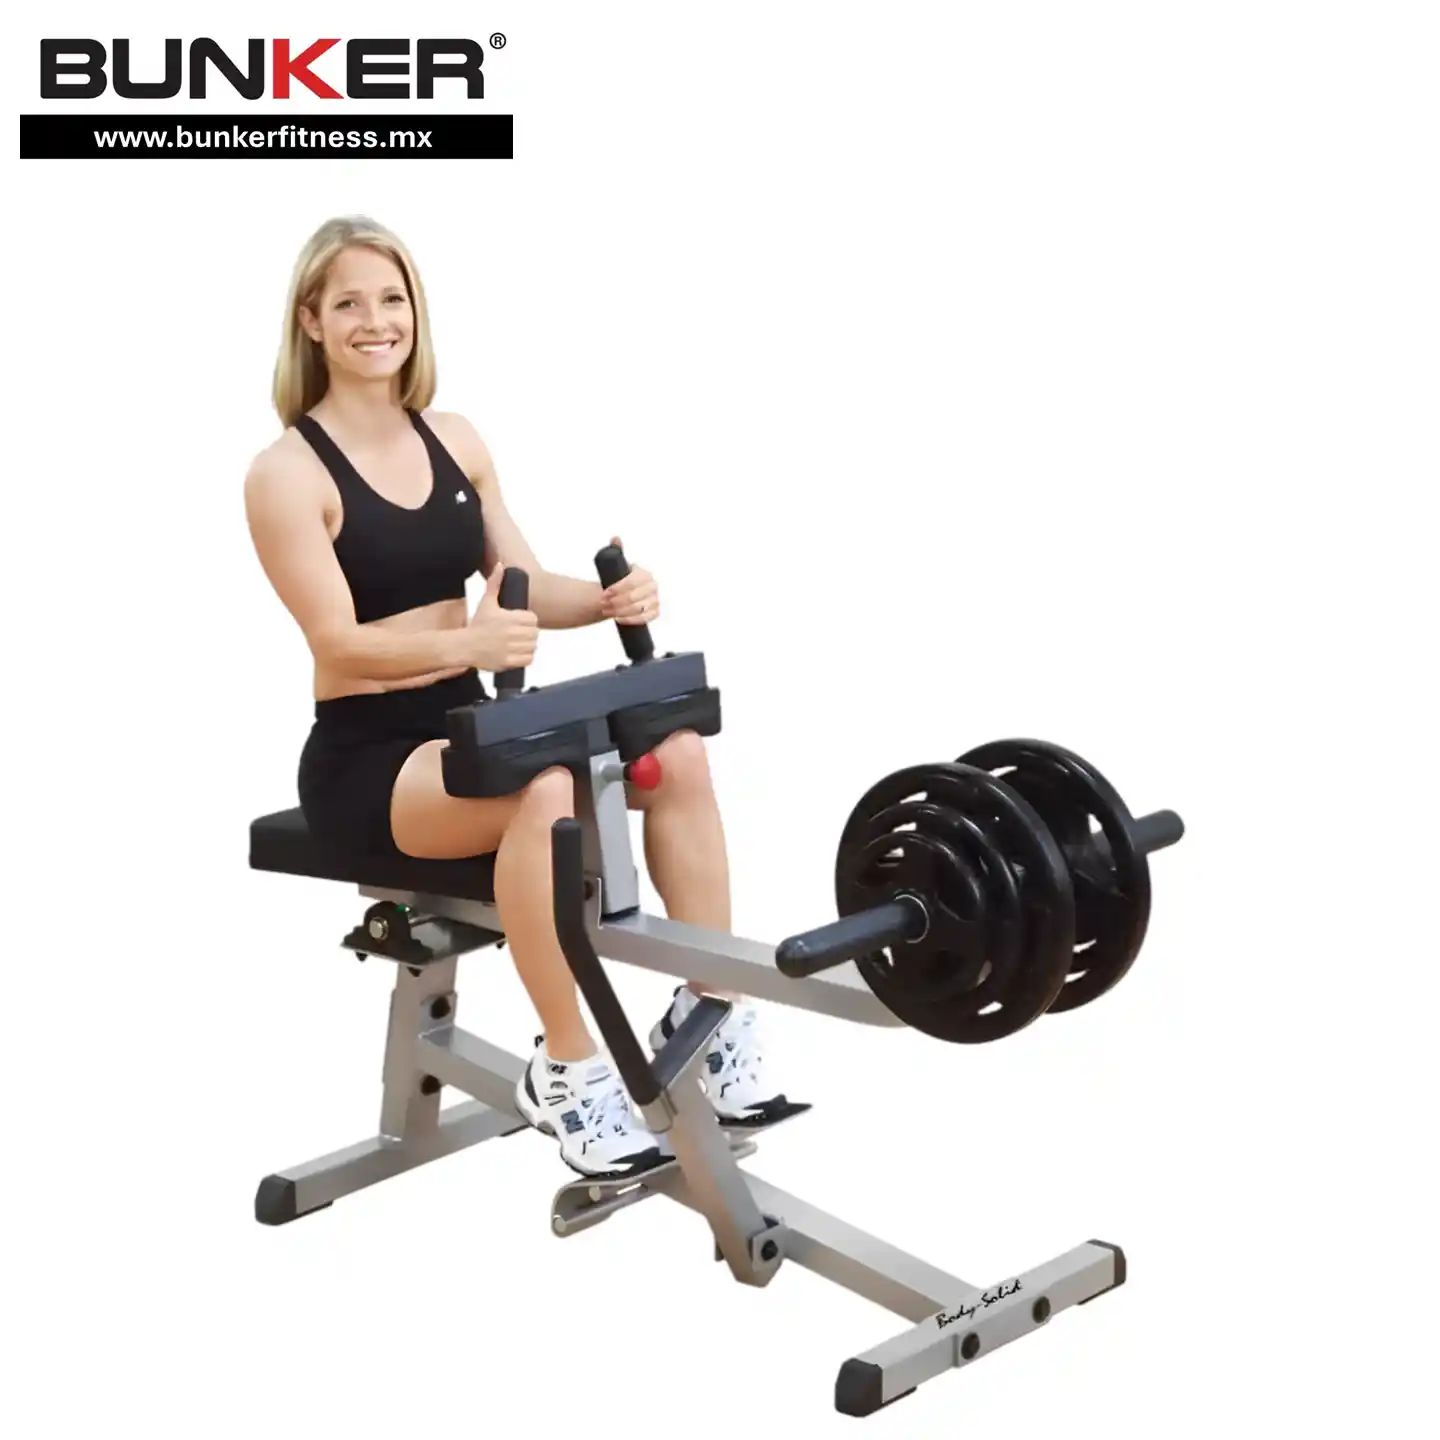 aparato para pantorrilla body solid peso libre  para ejercicio y gimnasio en casa bunker gym bunker fitness